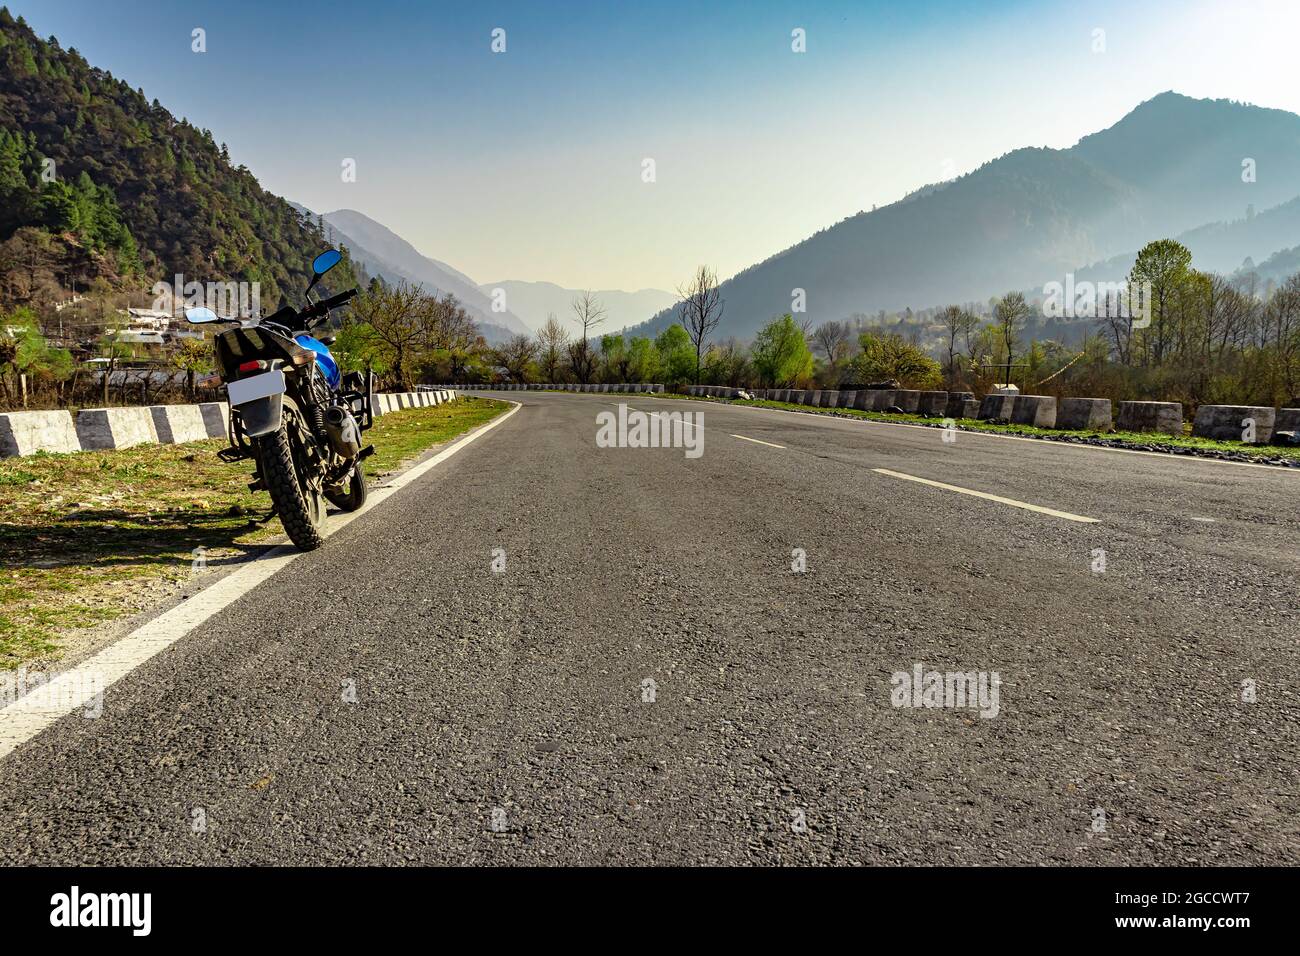 motorcycle at tarmac road with beautiful natural view at morning image is taken at shergaon arunachal pradesh india. Stock Photo